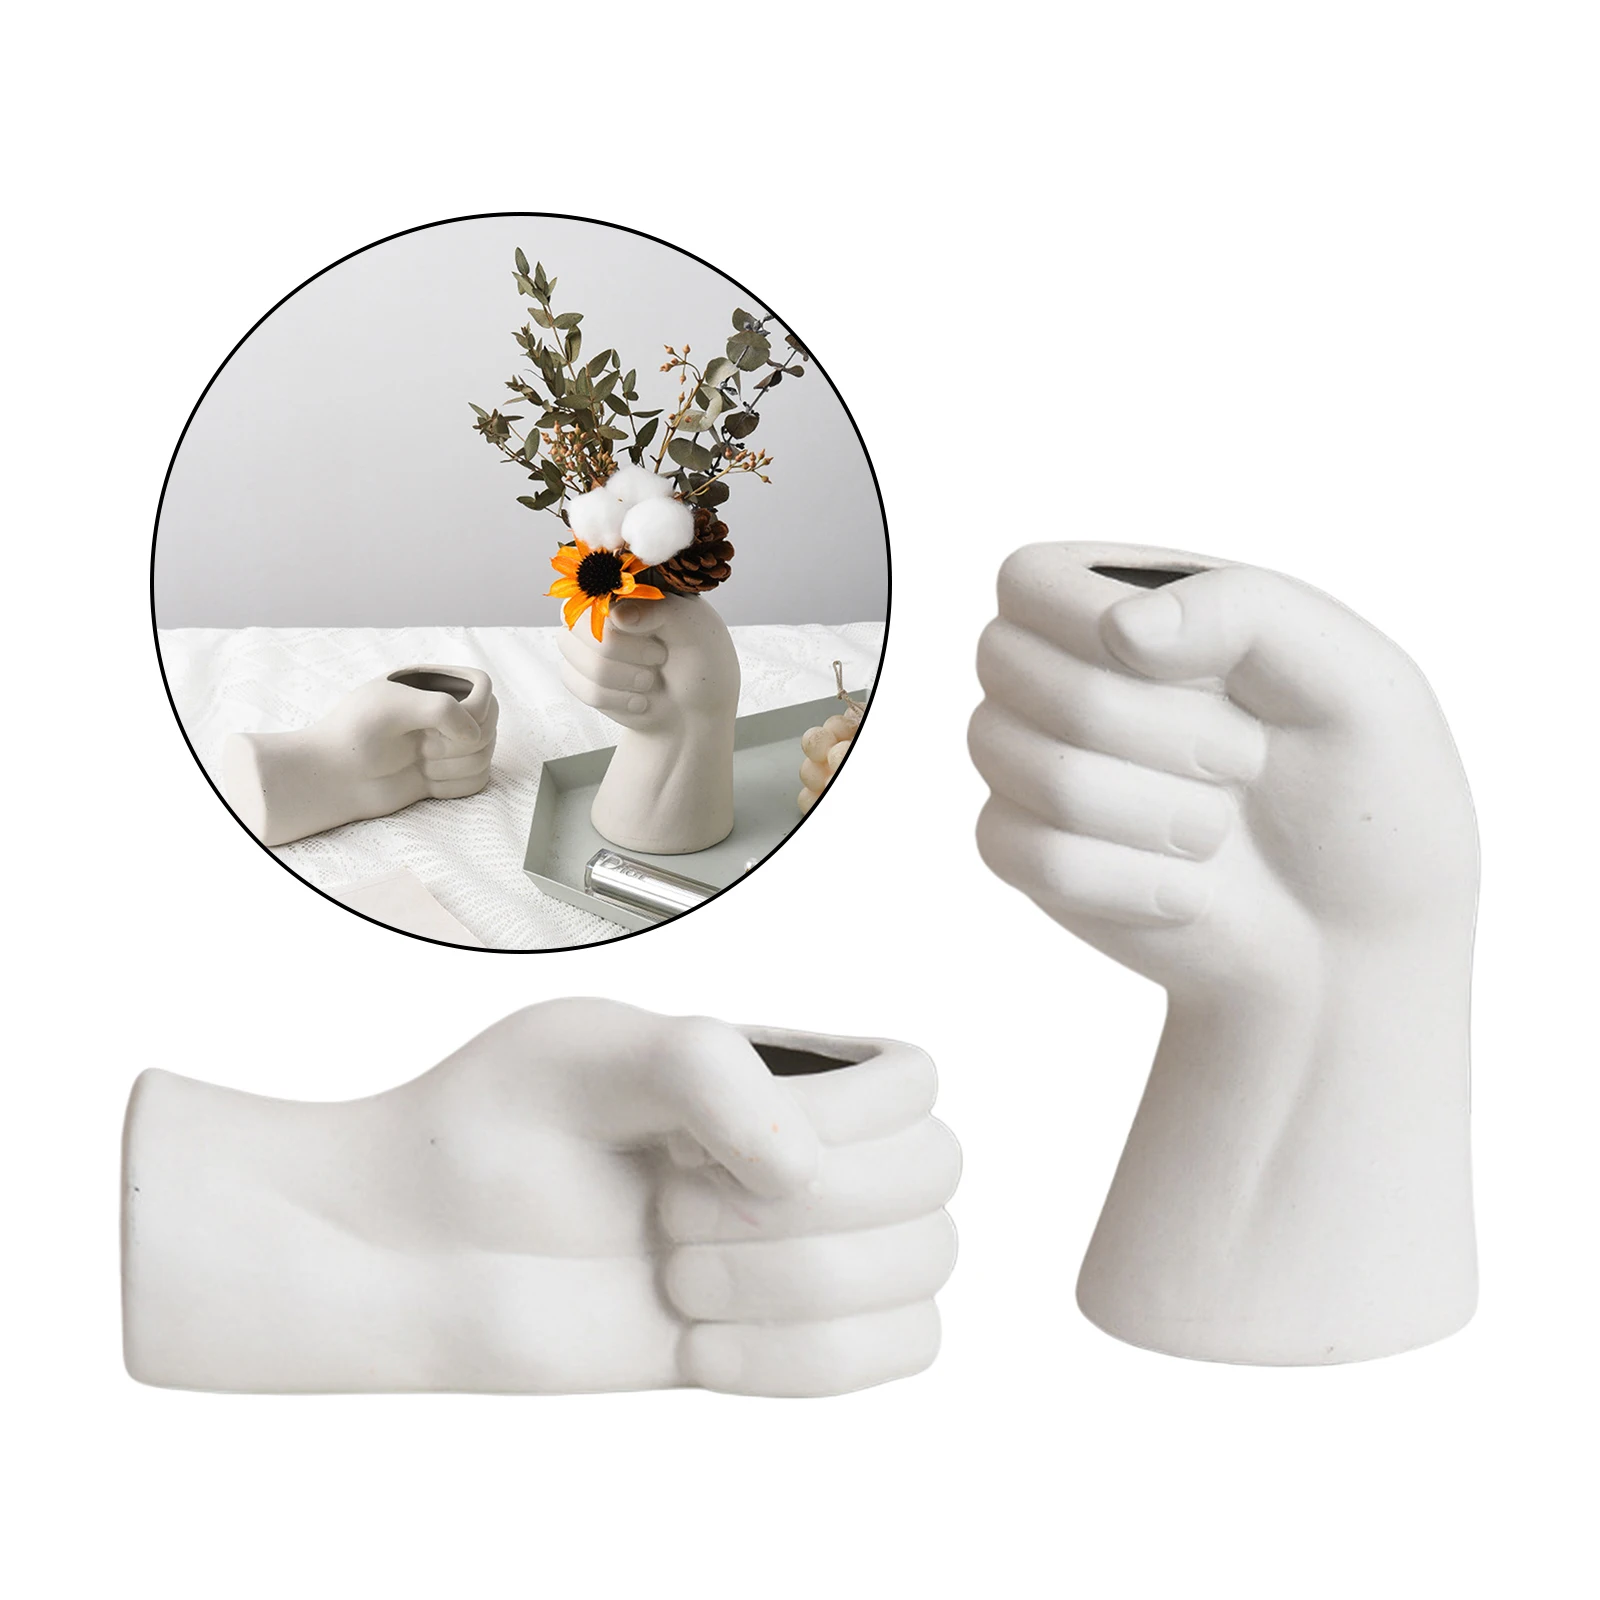 Creative White Ceramic Flower Vases Nordic Hand Shape Vase Sculpture Shelf Desktop Plant Pot Modern Home Office Art Decor Gifts